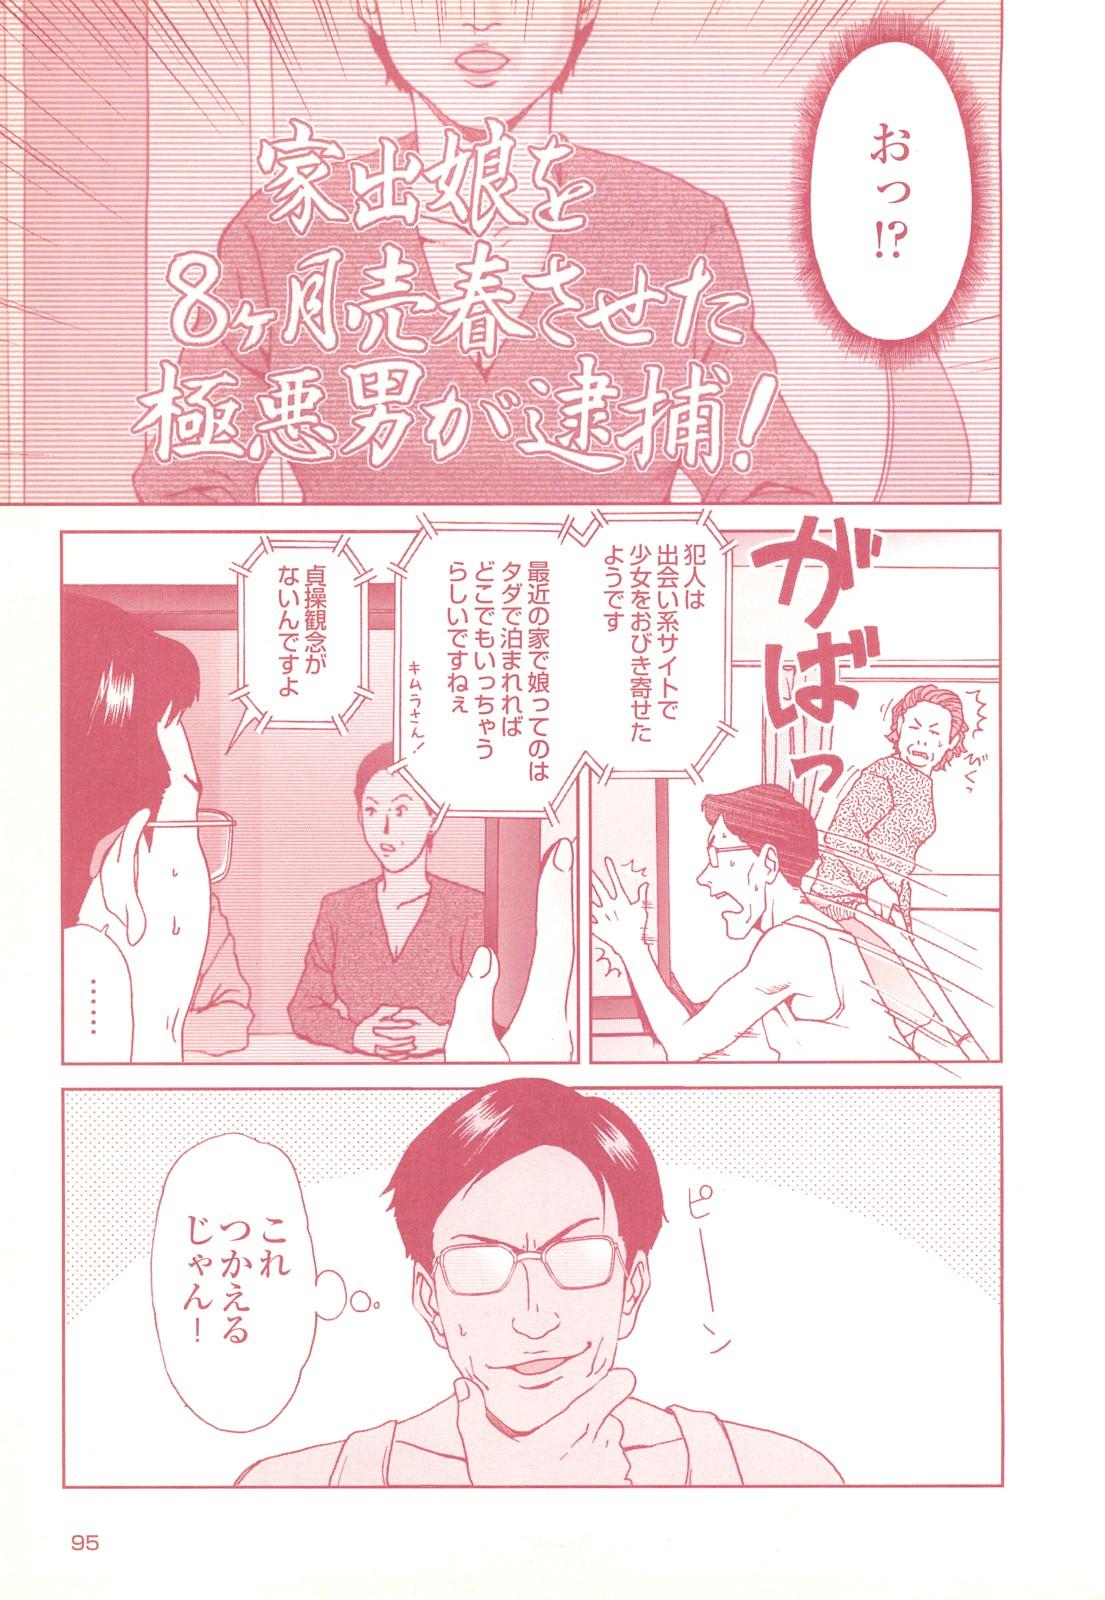 コミック裏モノJAPAN Vol.18 今井のりたつスペシャル号 94